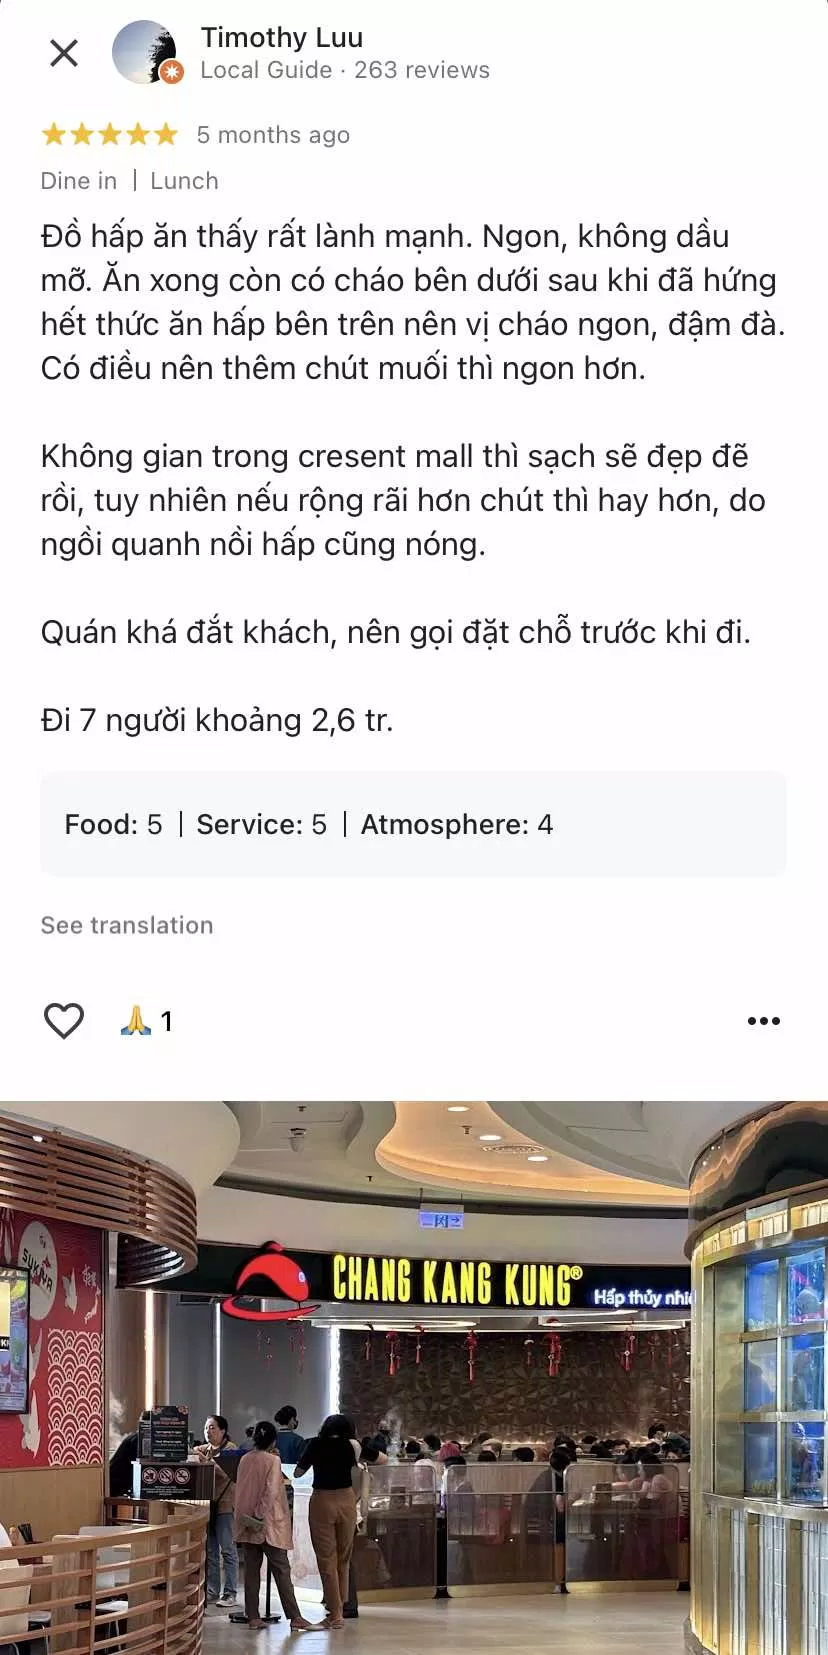 Nhận xét của khách hàng về nhà hàng Chang Kang Kung (nguồn: Internet)